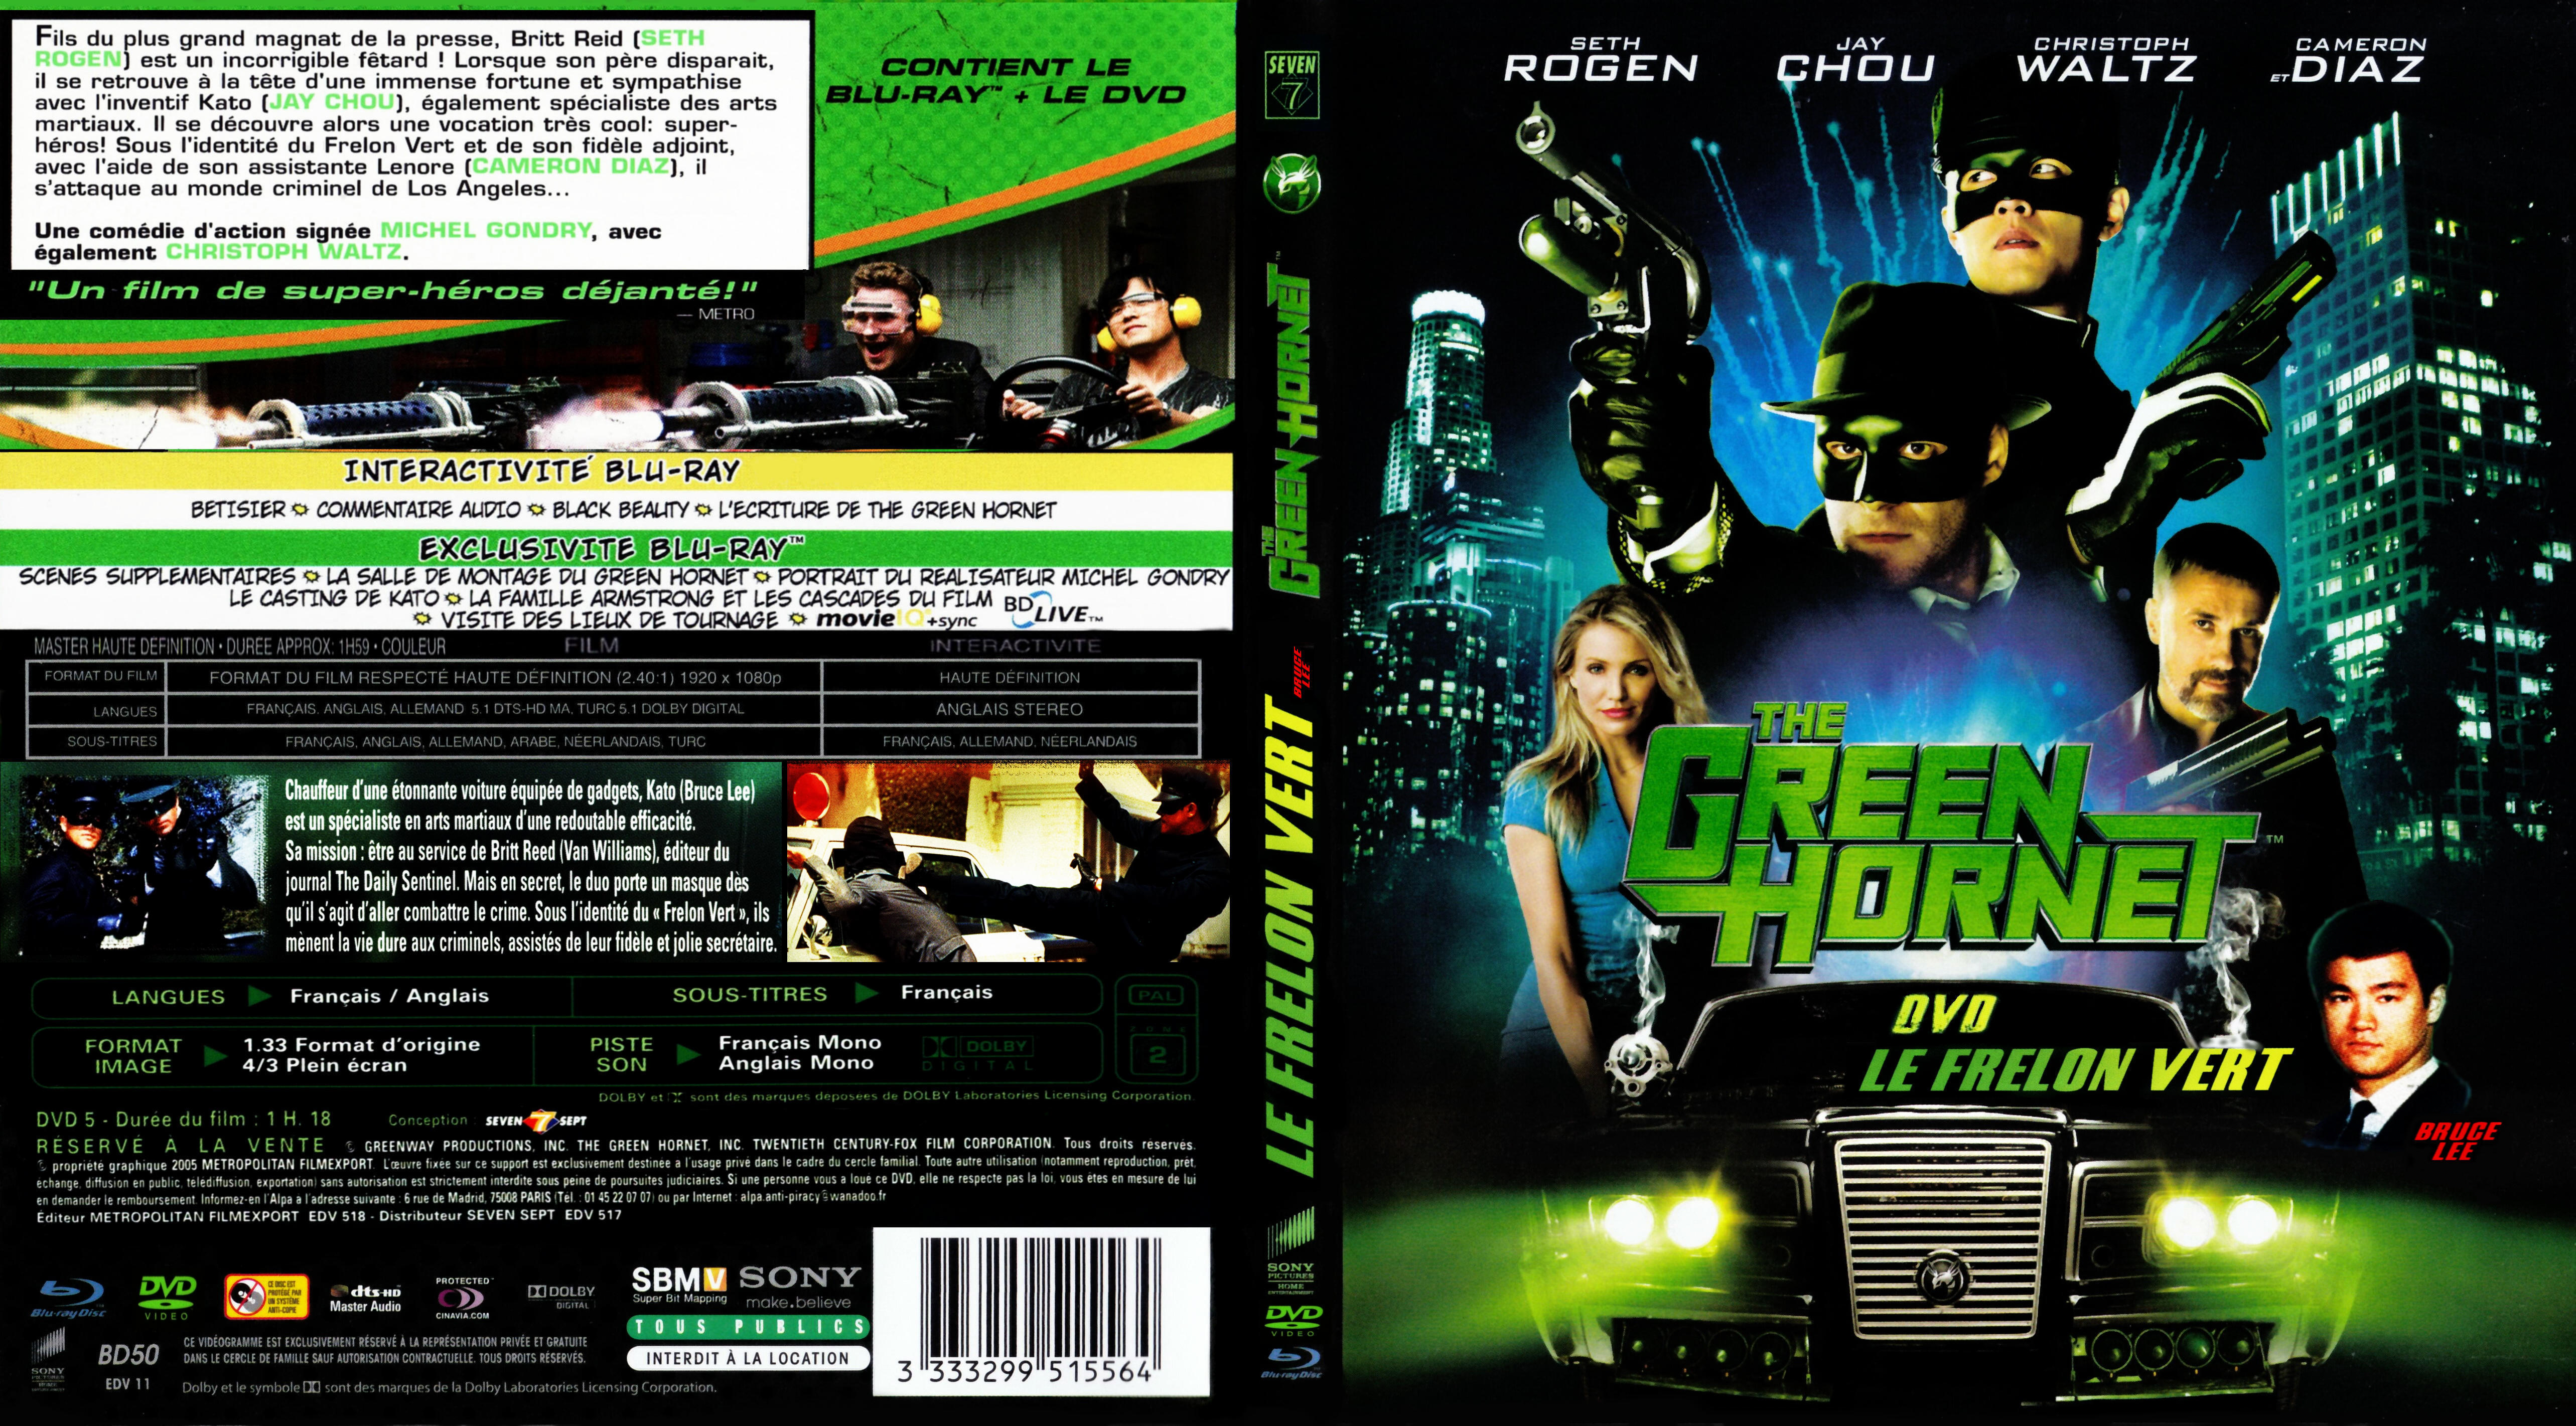 Jaquette DVD The green hornet + Le frelon vert custom